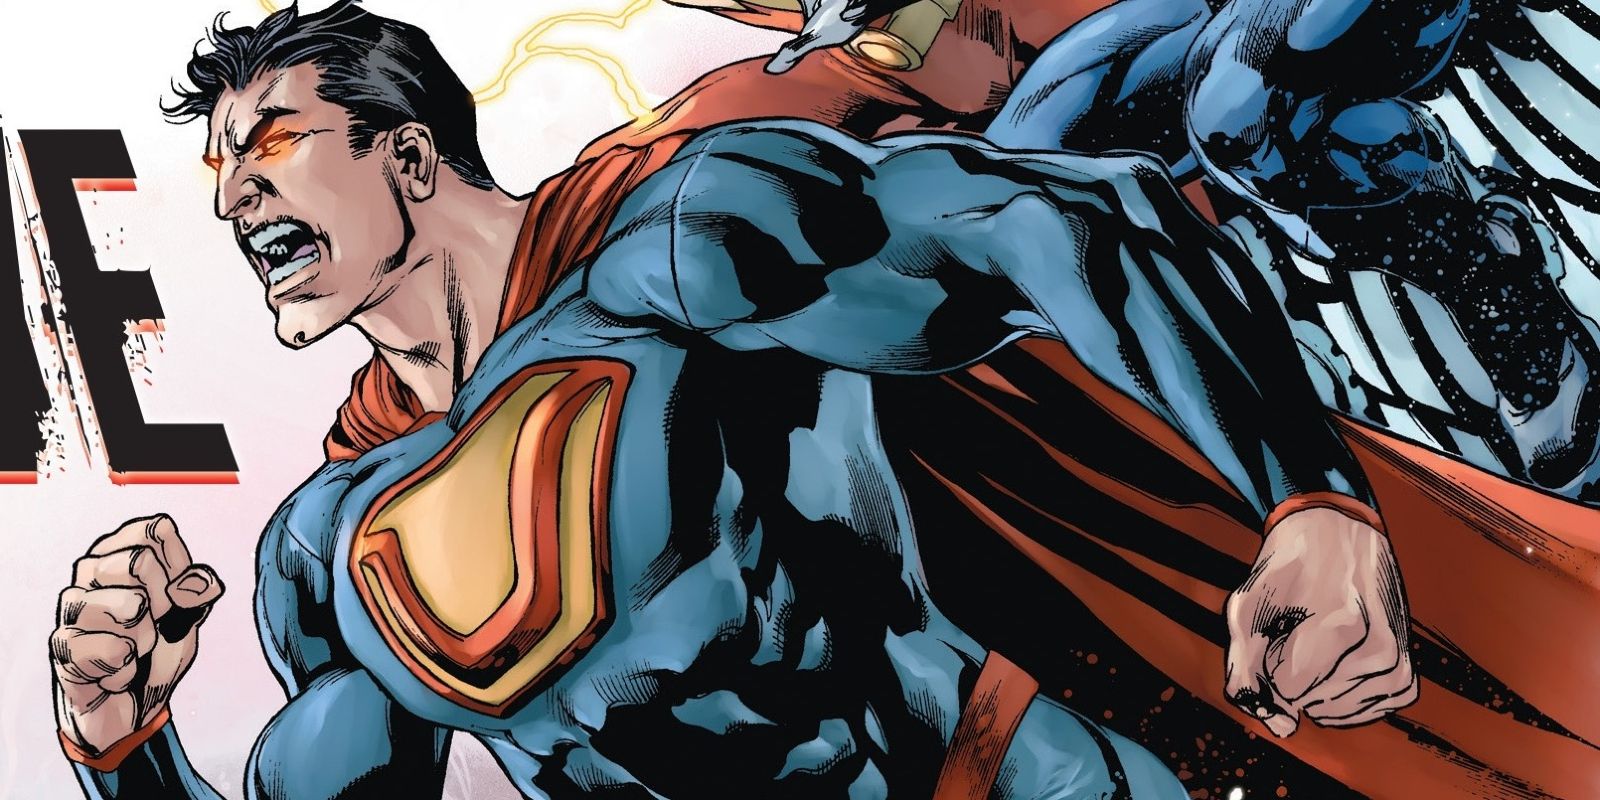 Ultraman Powered By Anti-Kryptonite in DC Comics